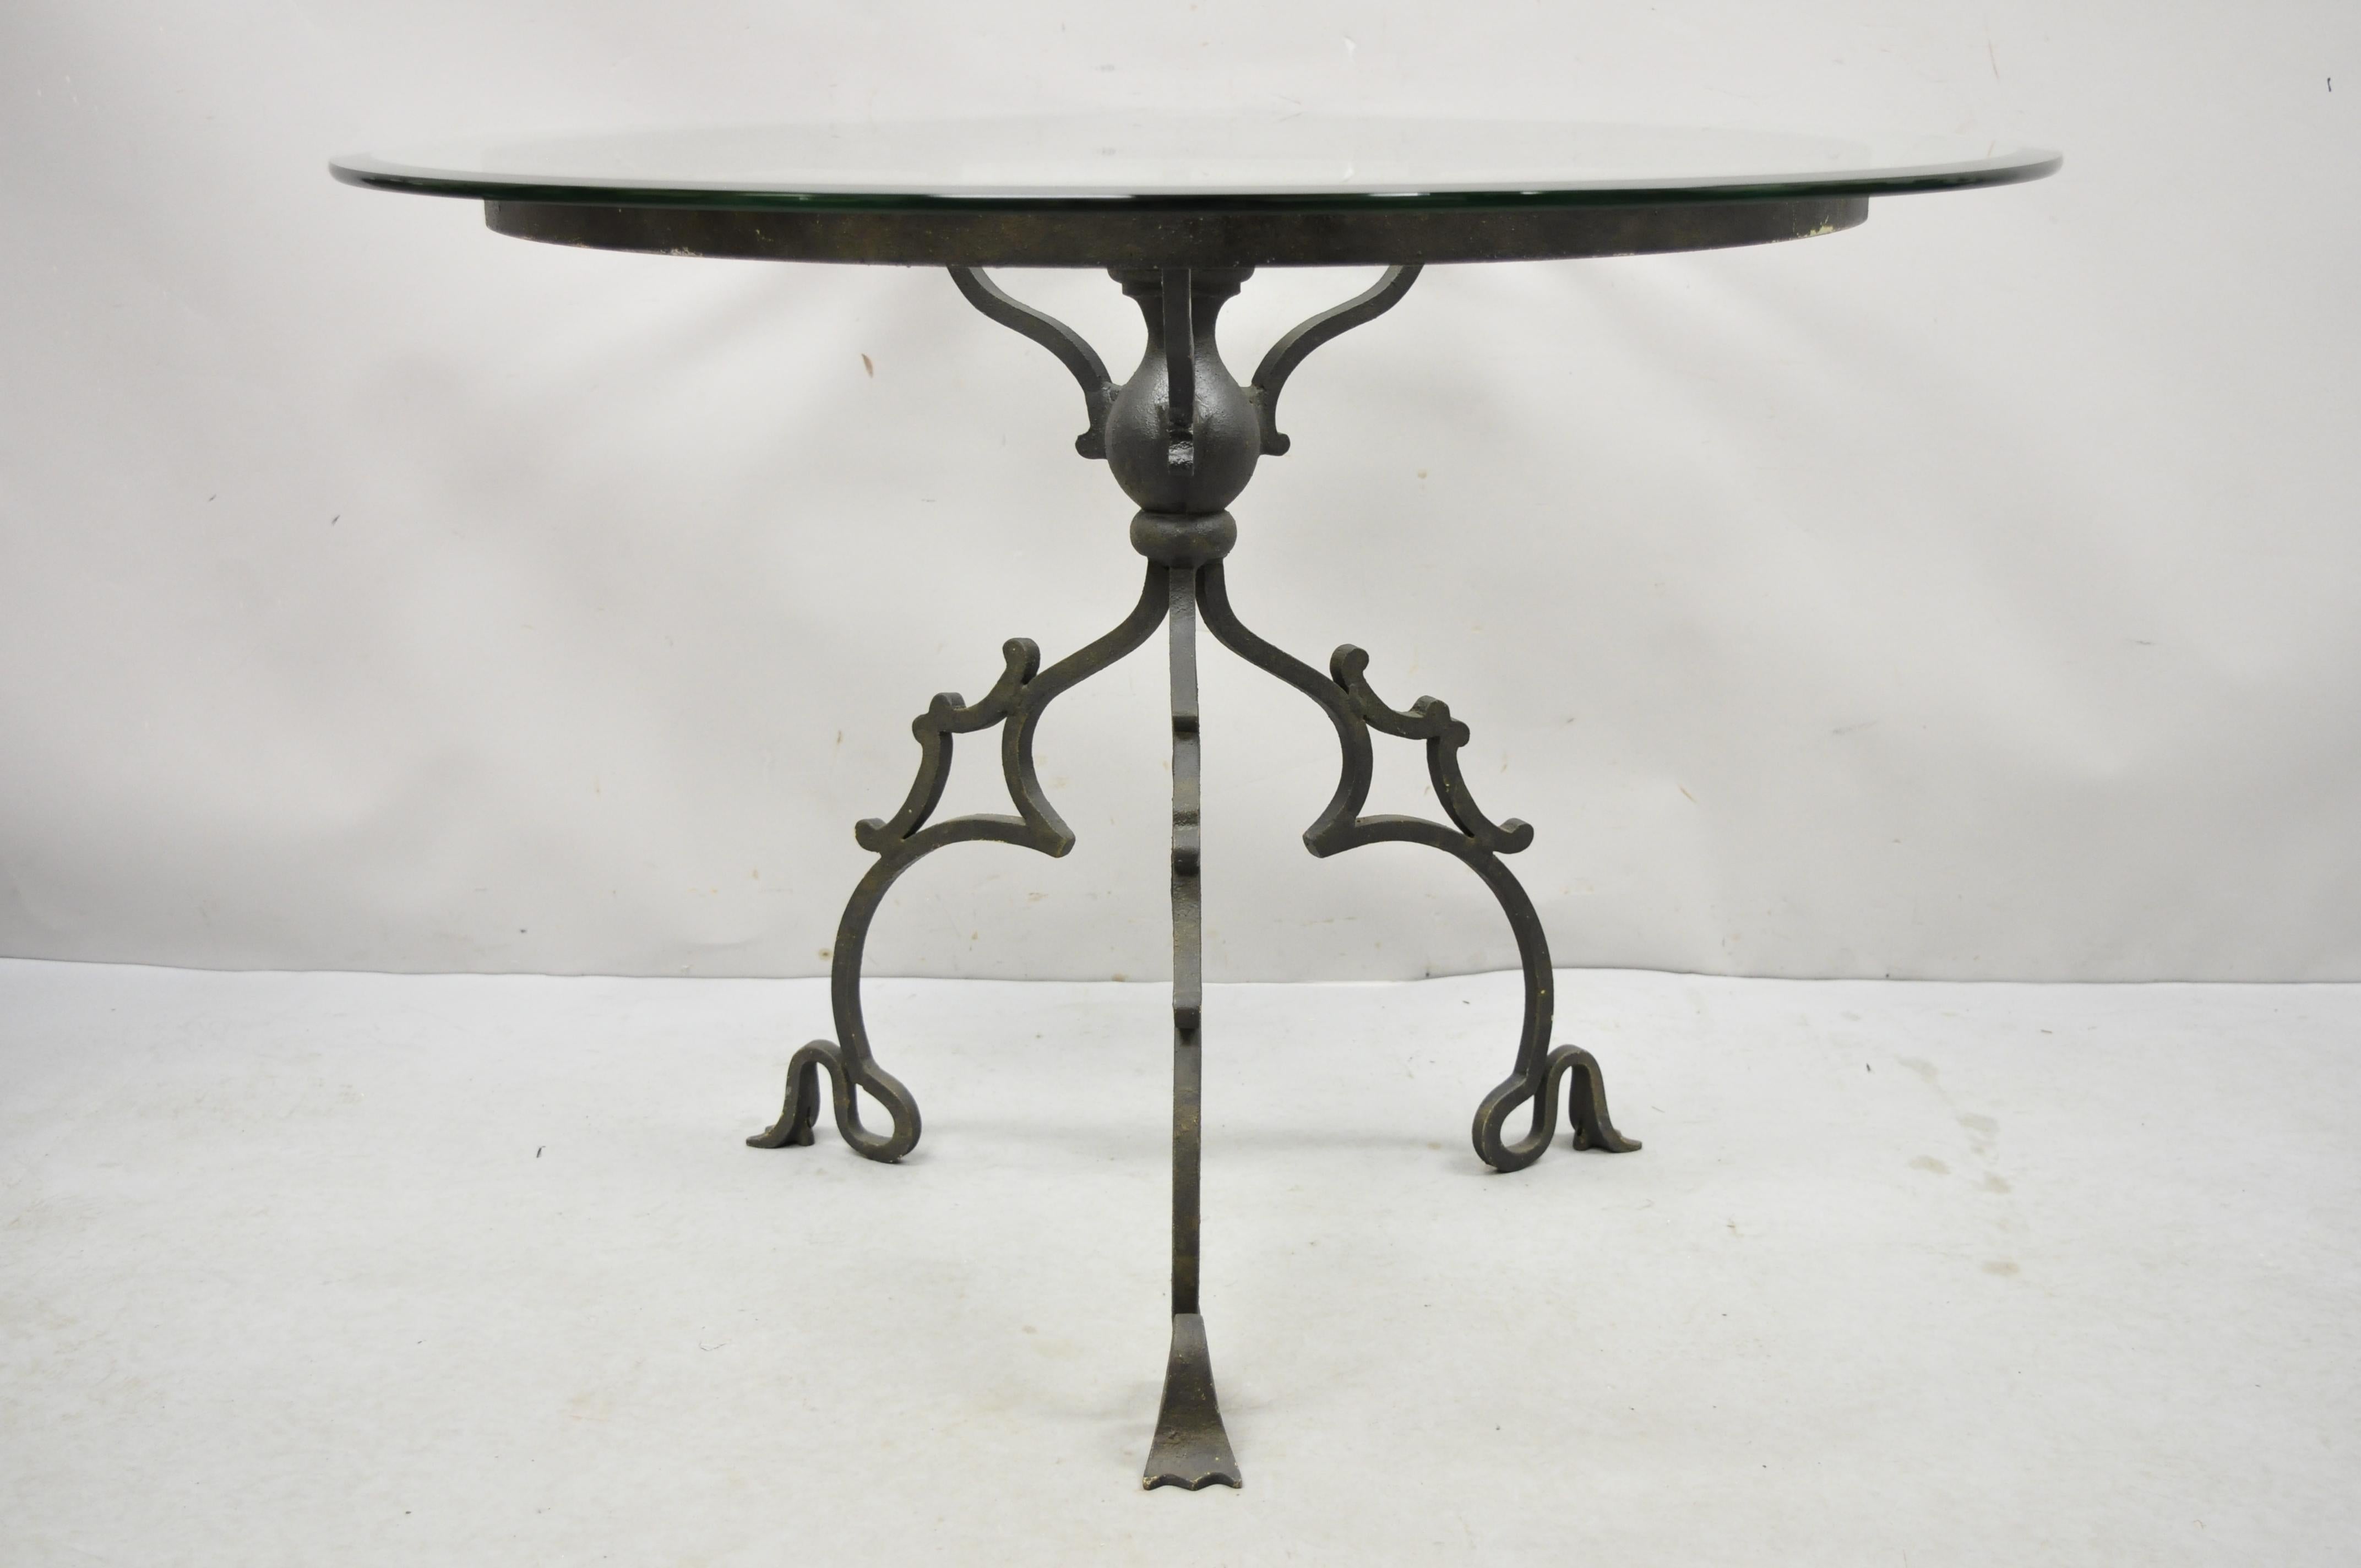 Runder Tisch mit runder Glasplatte im gotischen Stil aus Schmiedeeisen mit geschwungenem Sockel. Artikel verfügt über einen verschnörkelten schmiedeeisernen Sockel im gotischen Stil, eine runde Glasplatte, hochwertige Handwerkskunst, großartige